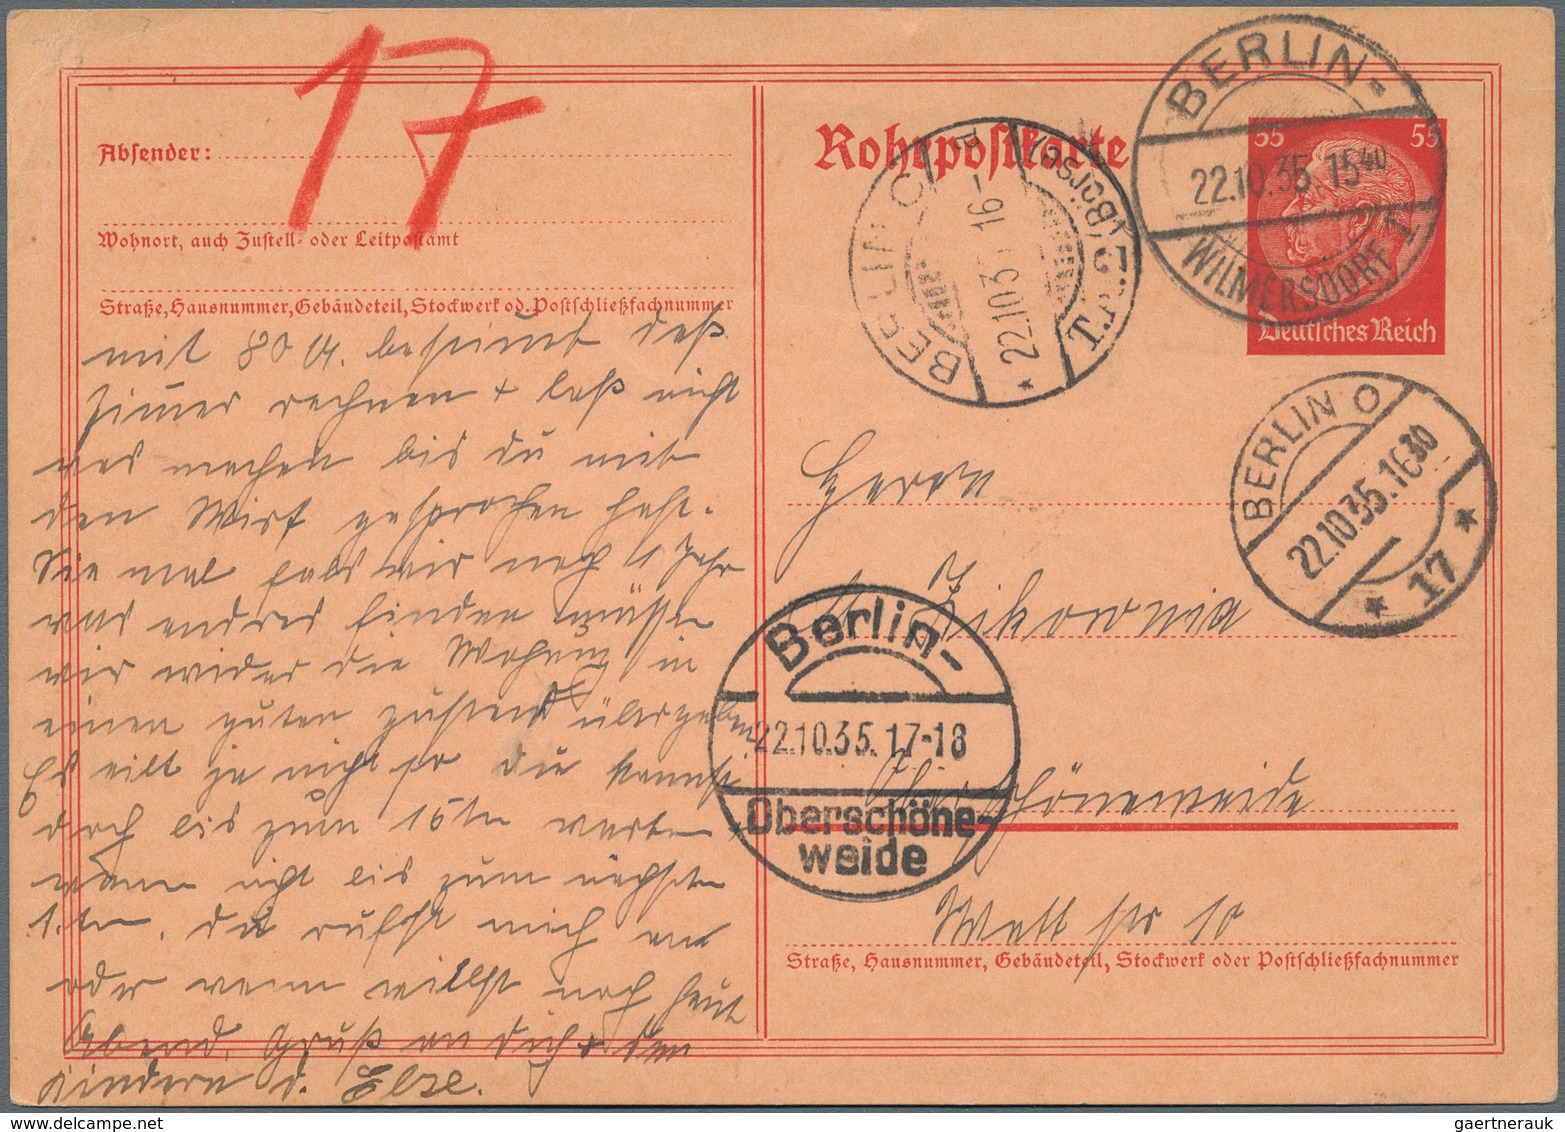 Deutsches Reich: 1872/1945, BELEGE-FUNDUS, gehaltvoller Posten mit ca.320 Belegen, dabei viele besse